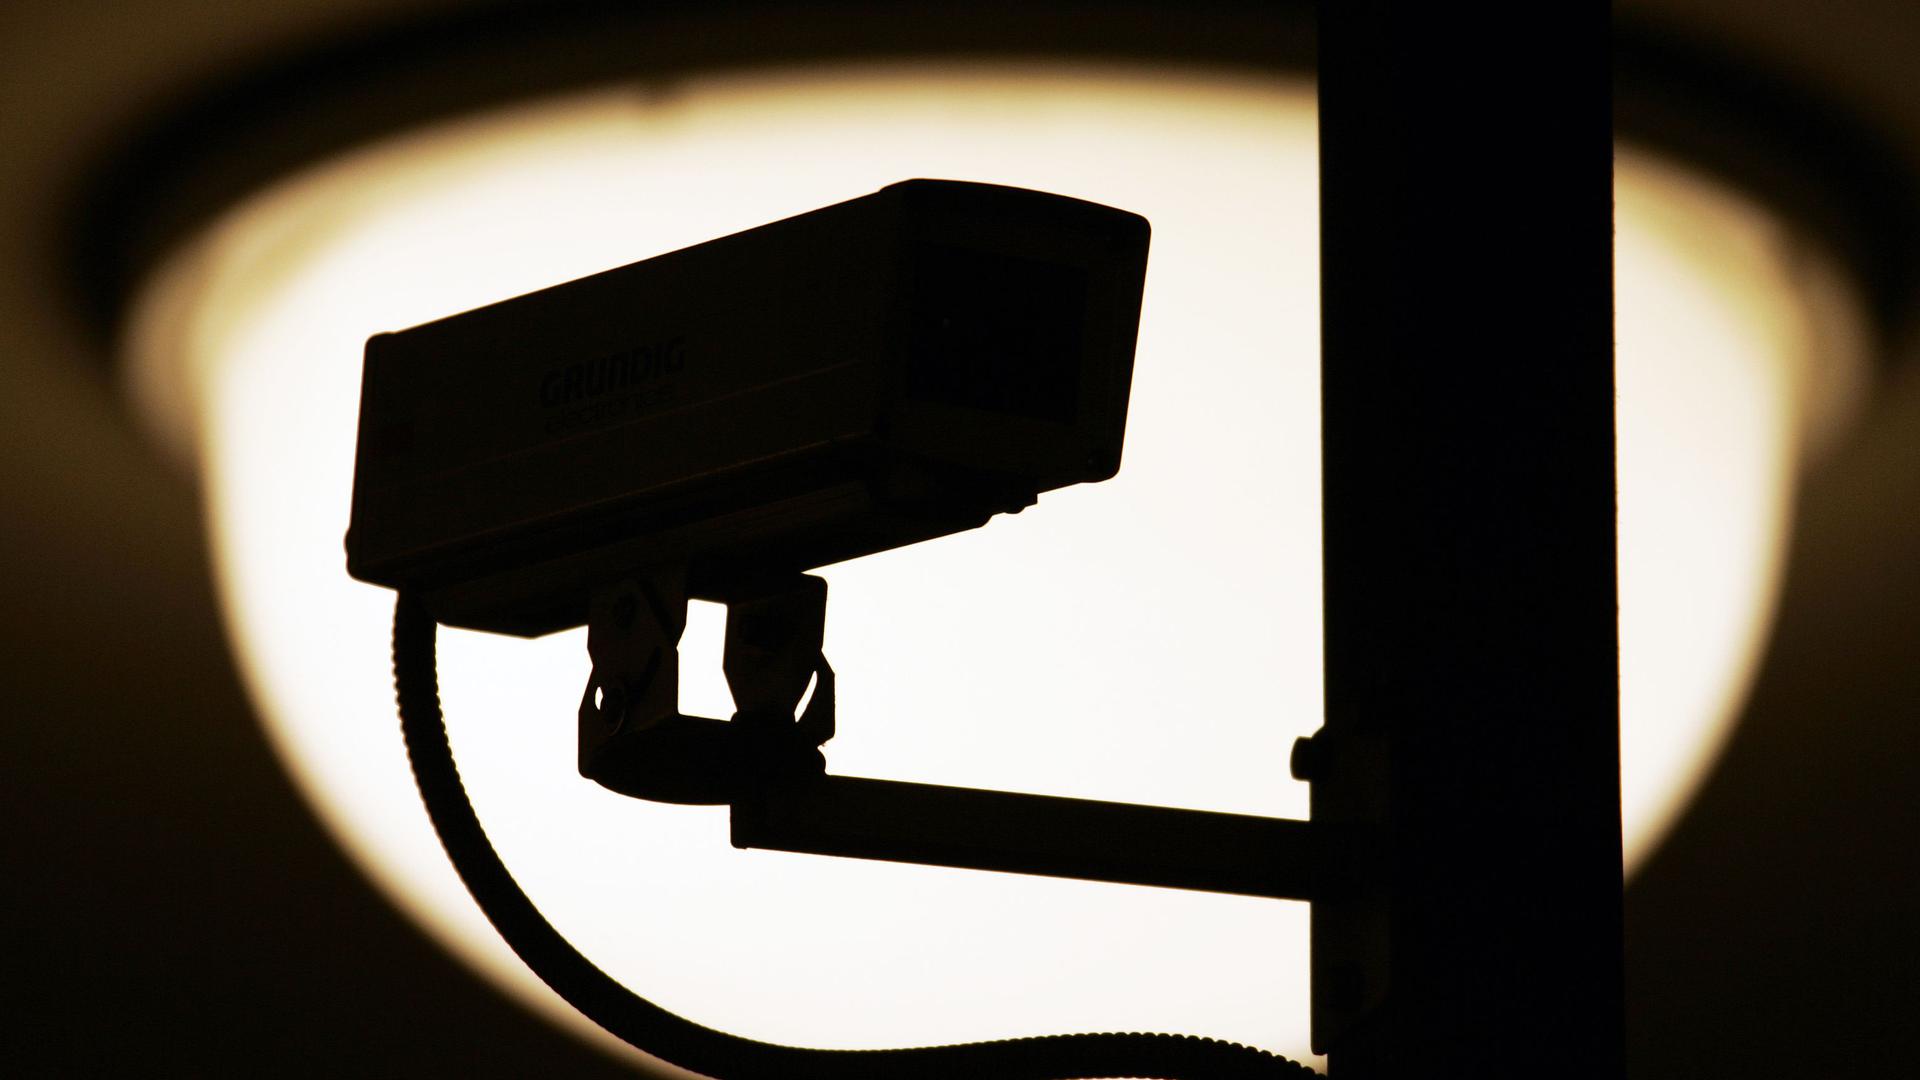 Eine Video-Überwachungskamera zeichnet sich vor einer Lampe als dunkle Silhouette ab.